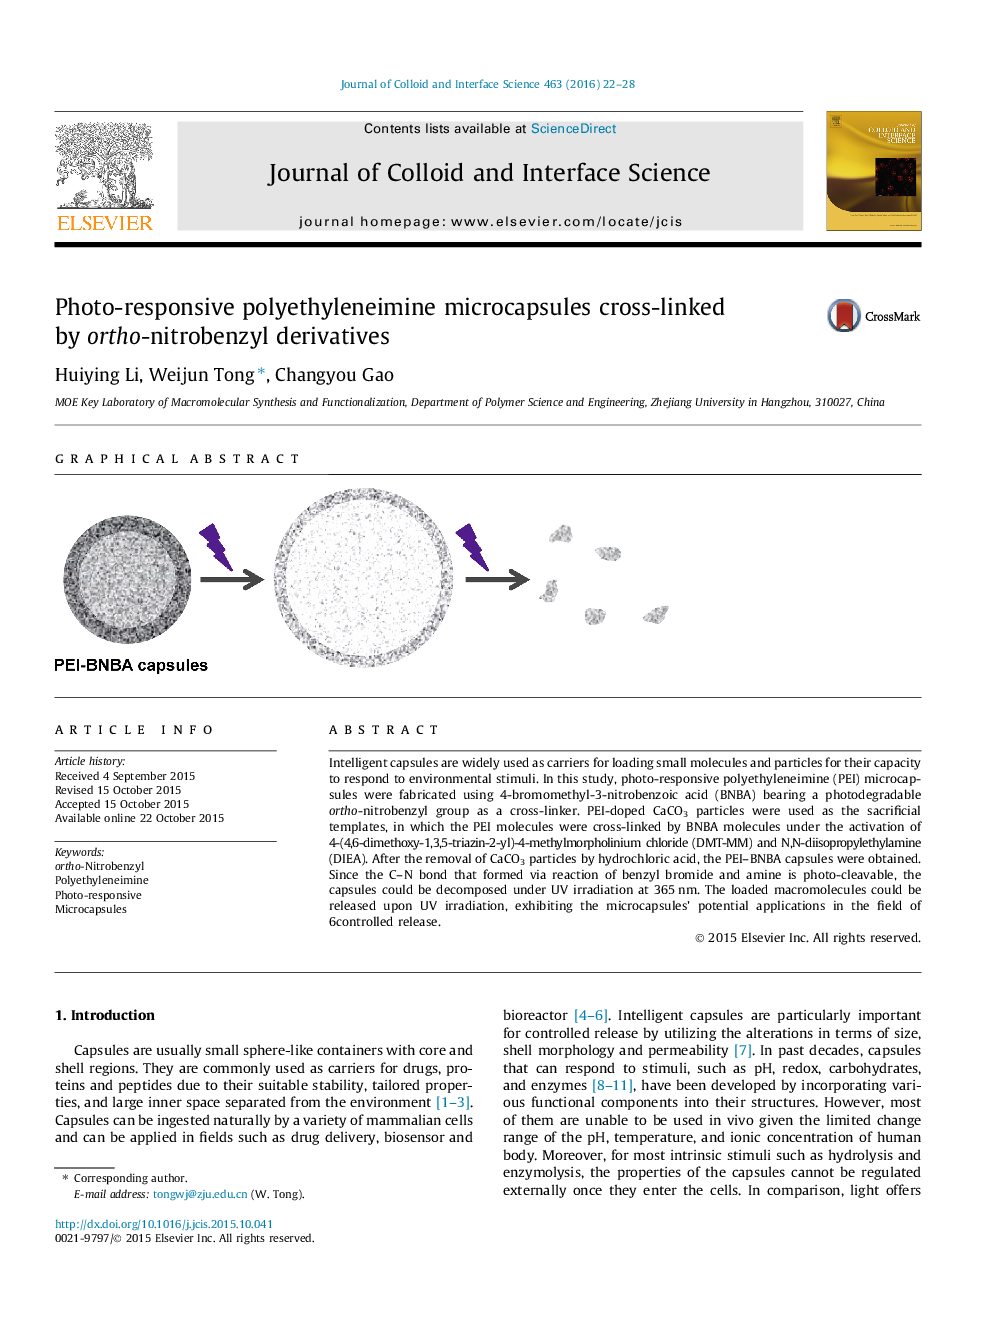 میکروکپسول های پلی اتیلنینیوم عکس گیرنده متصل شده توسط مشتقات ارتو نیترو بنزیل 